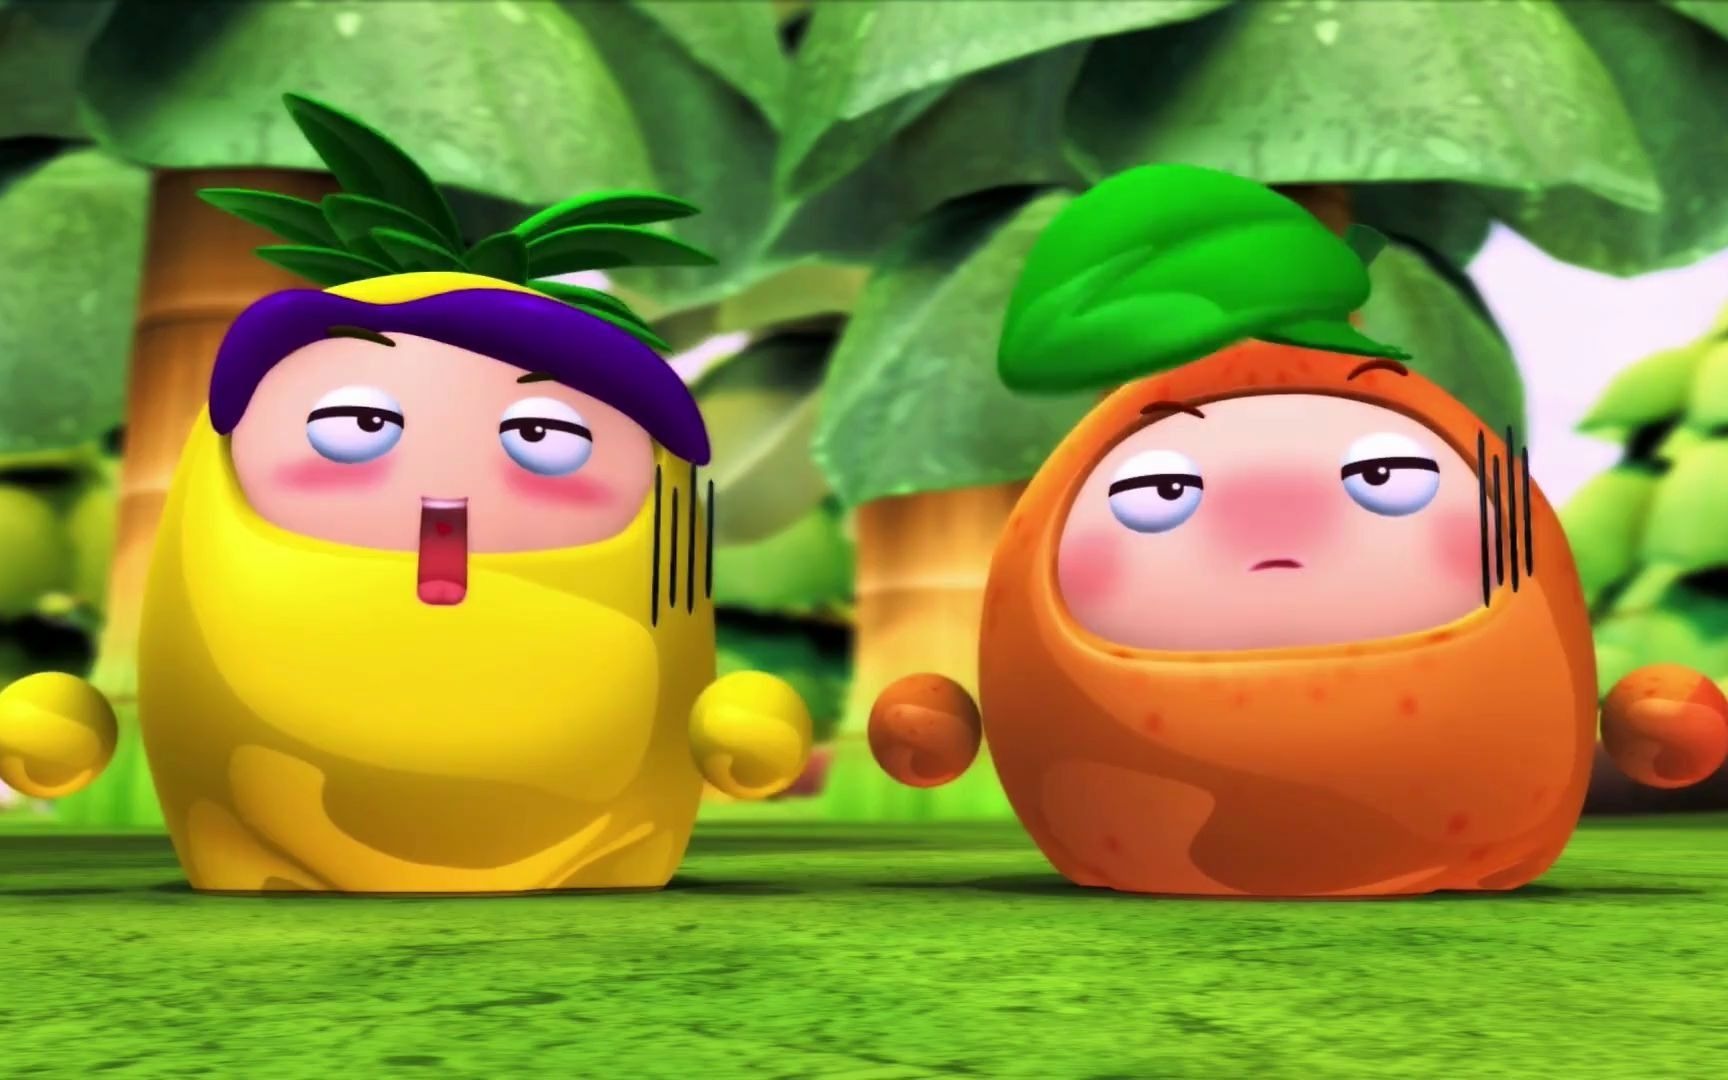 果宝特攻2:果宝机甲,归位!二代香橙战宝和菠萝战宝!